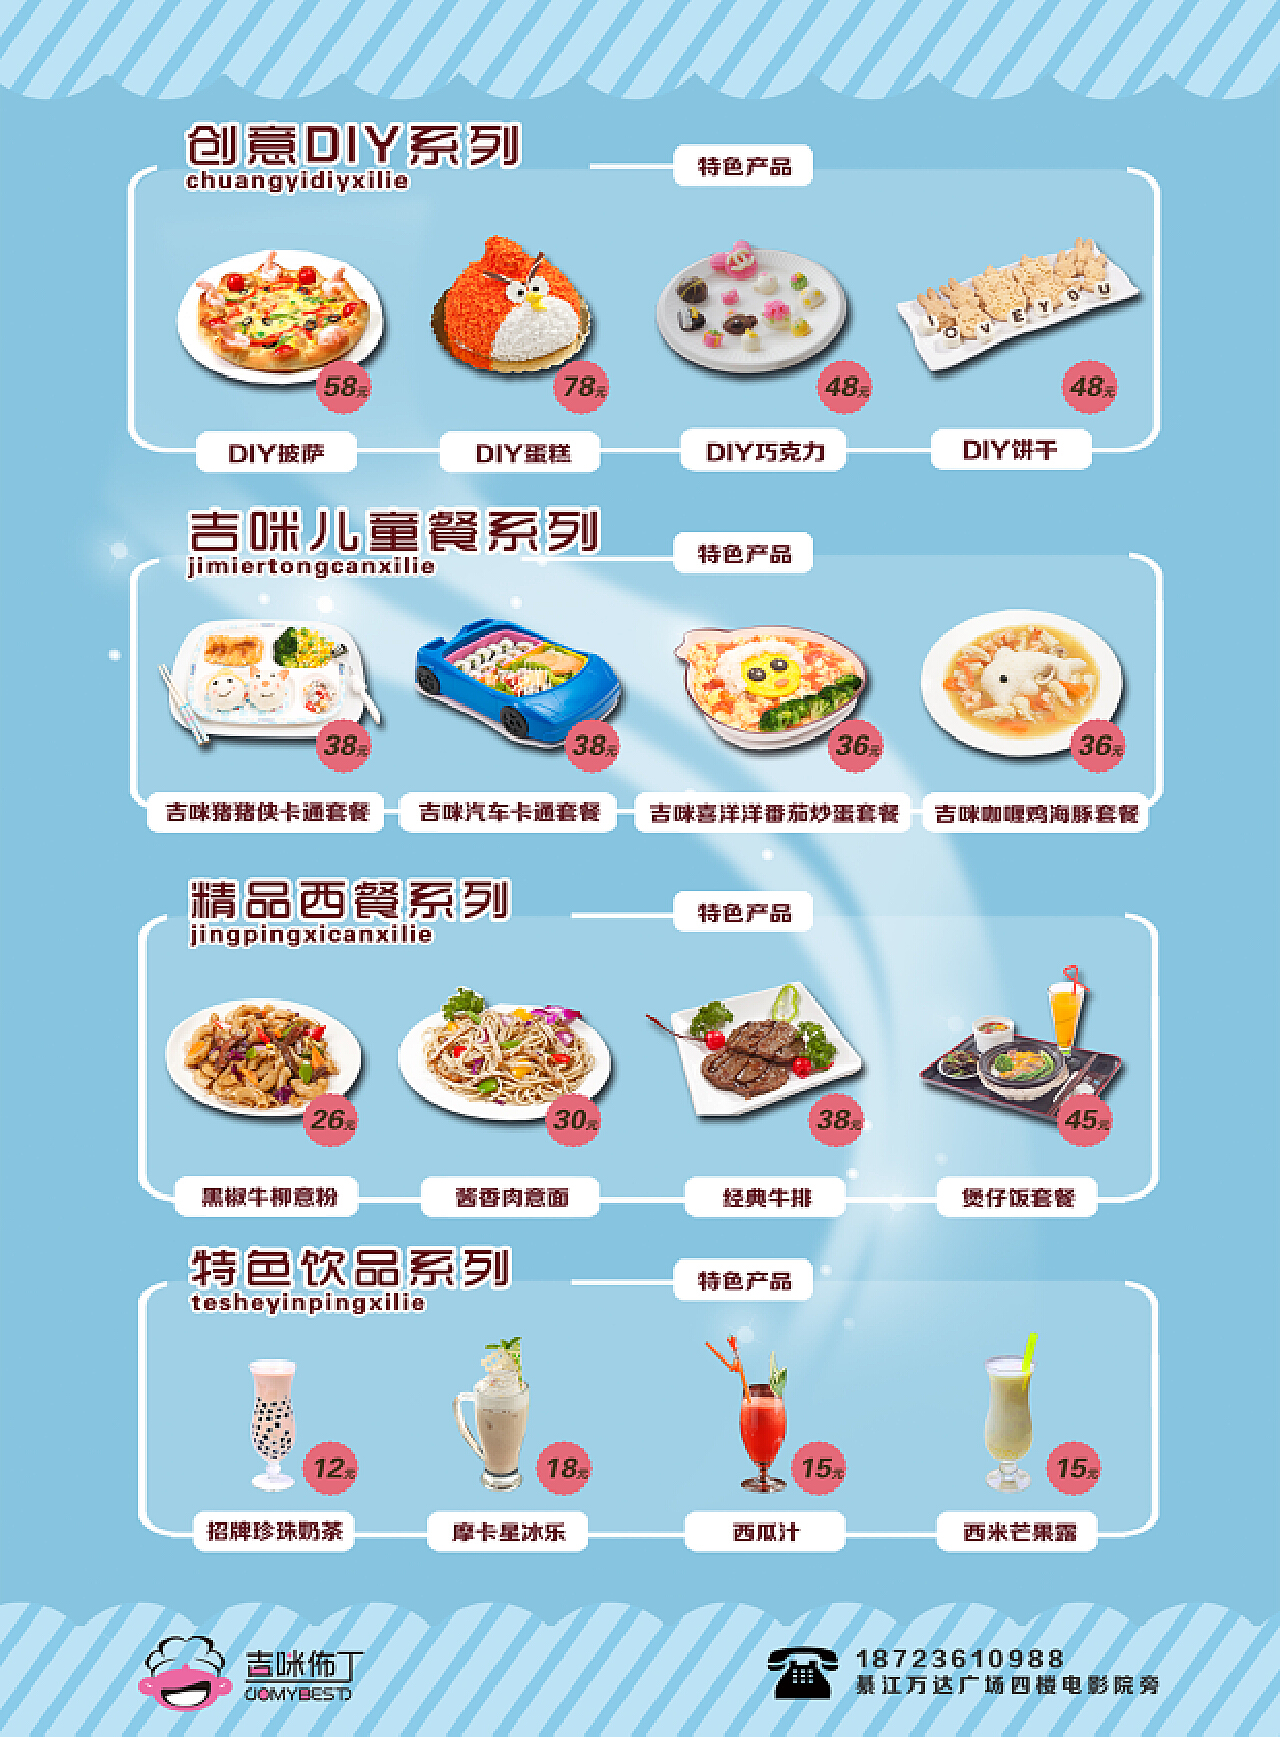 2018年5月31日幼儿一日菜谱 - 每日菜谱照片 - 杭州京江幼儿园